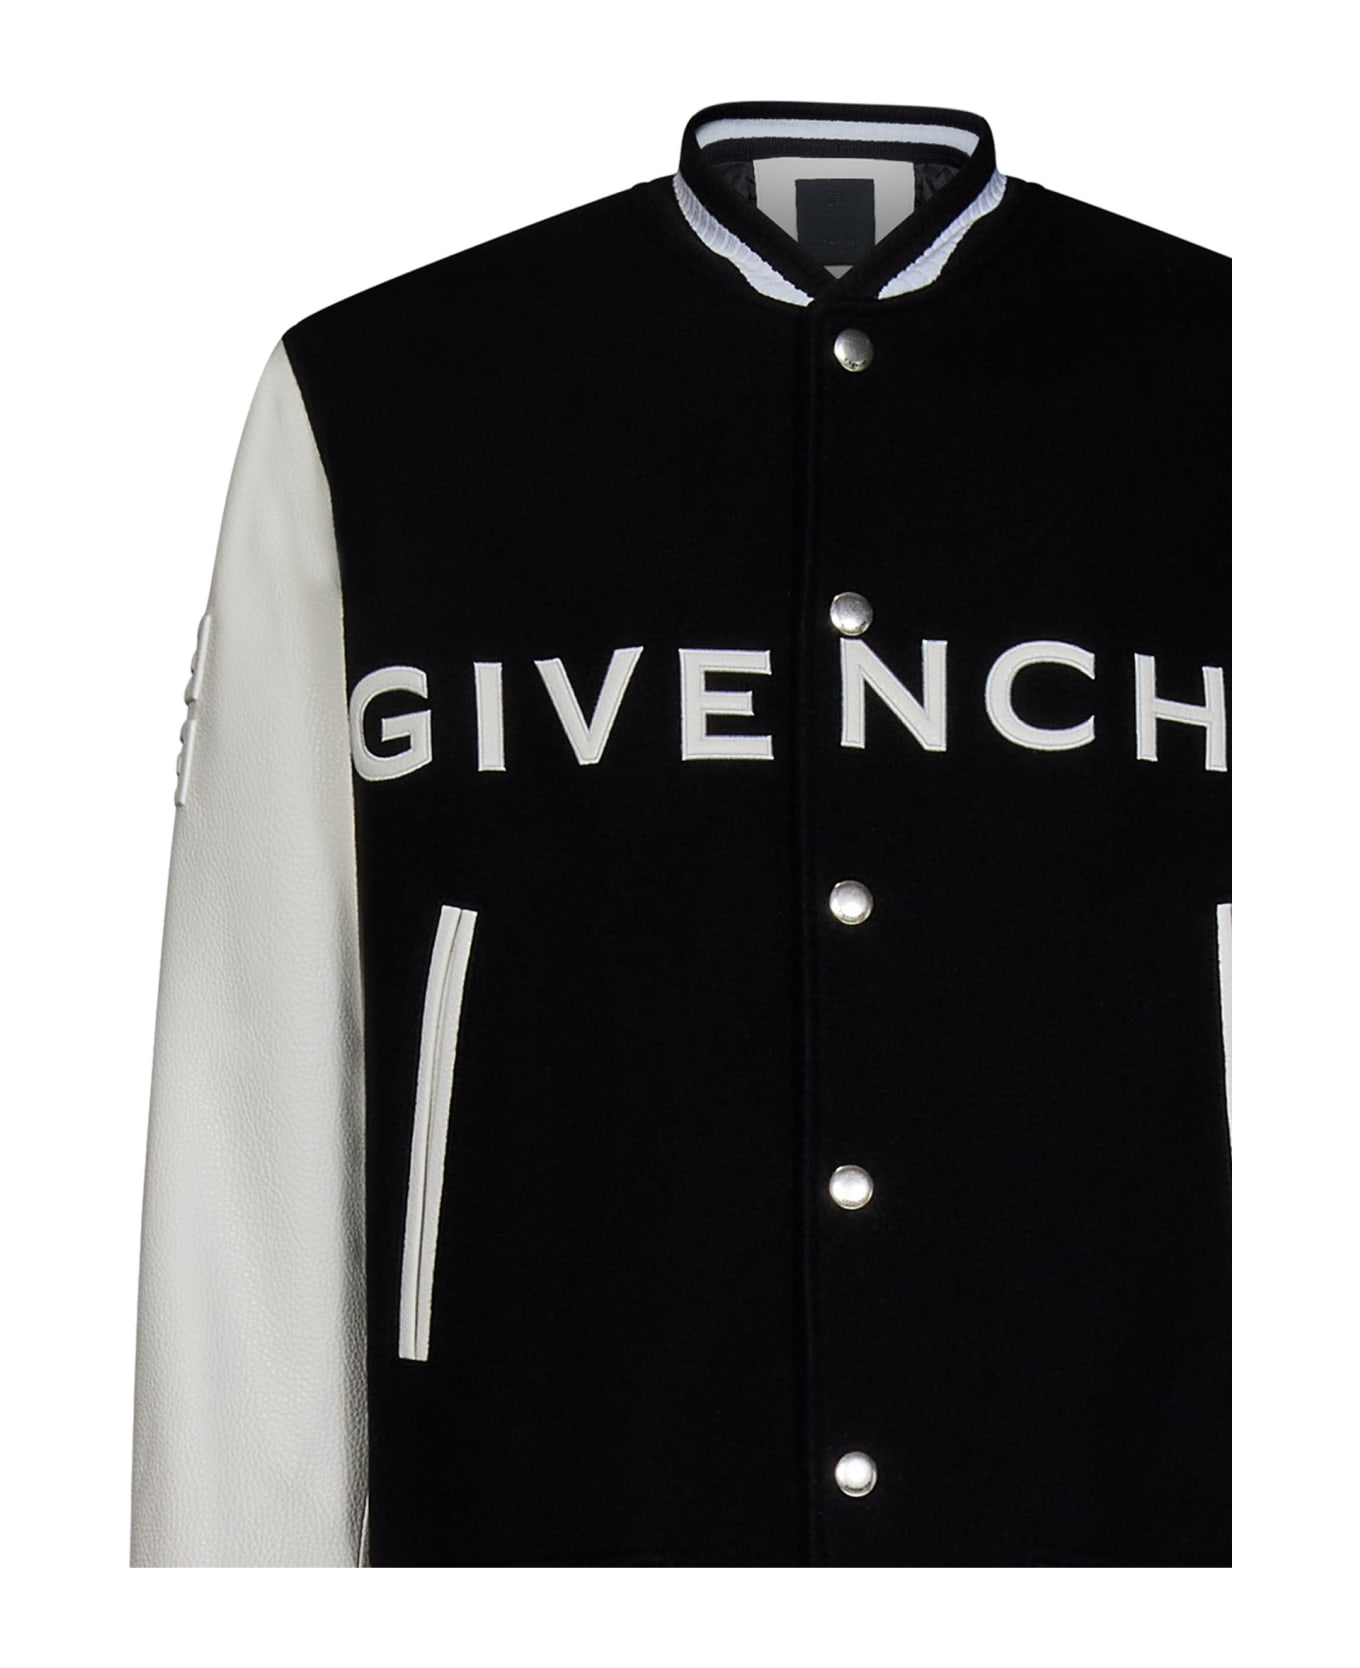 Givenchy Jacket - Black ジャケット